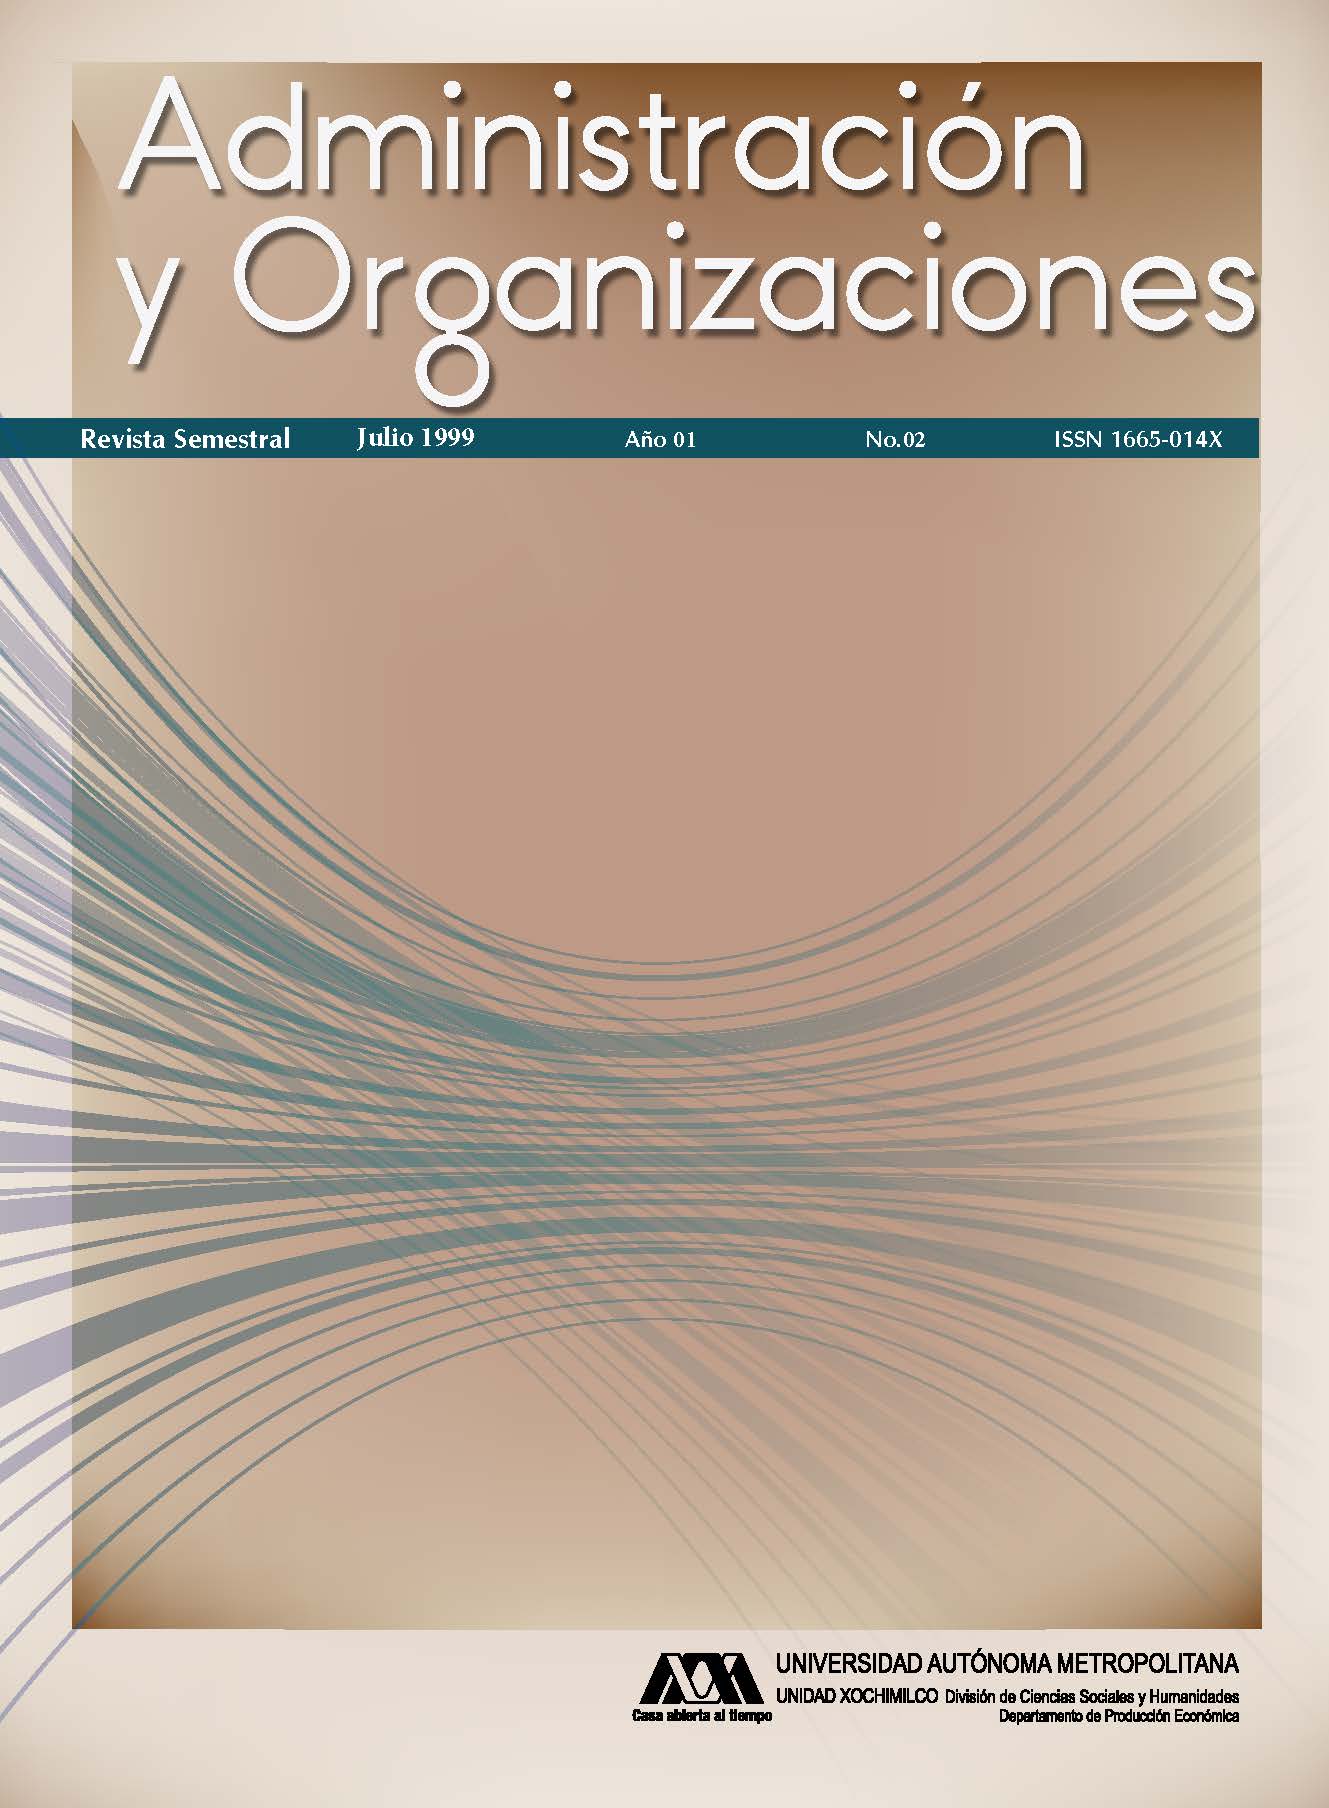 					Ver Vol. 1 Núm. 02 (1): Administración y Organizaciones
				